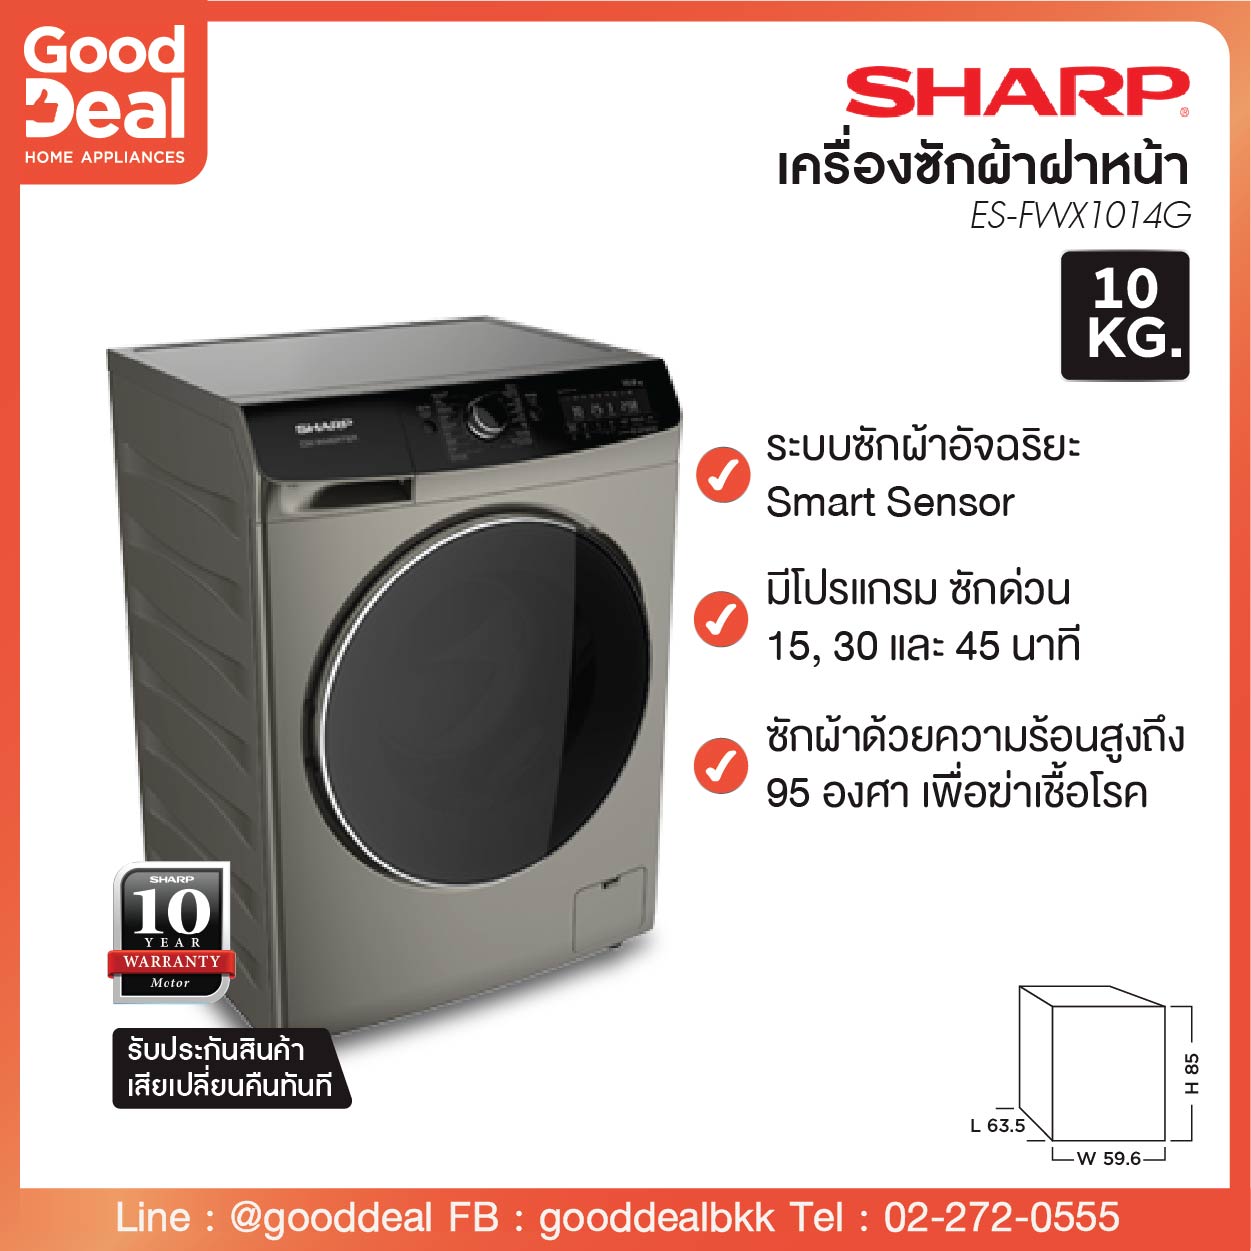 SHARP เครื่องซักผ้าฝาหน้า 10 กก. รุ่น ES-FWX1014G